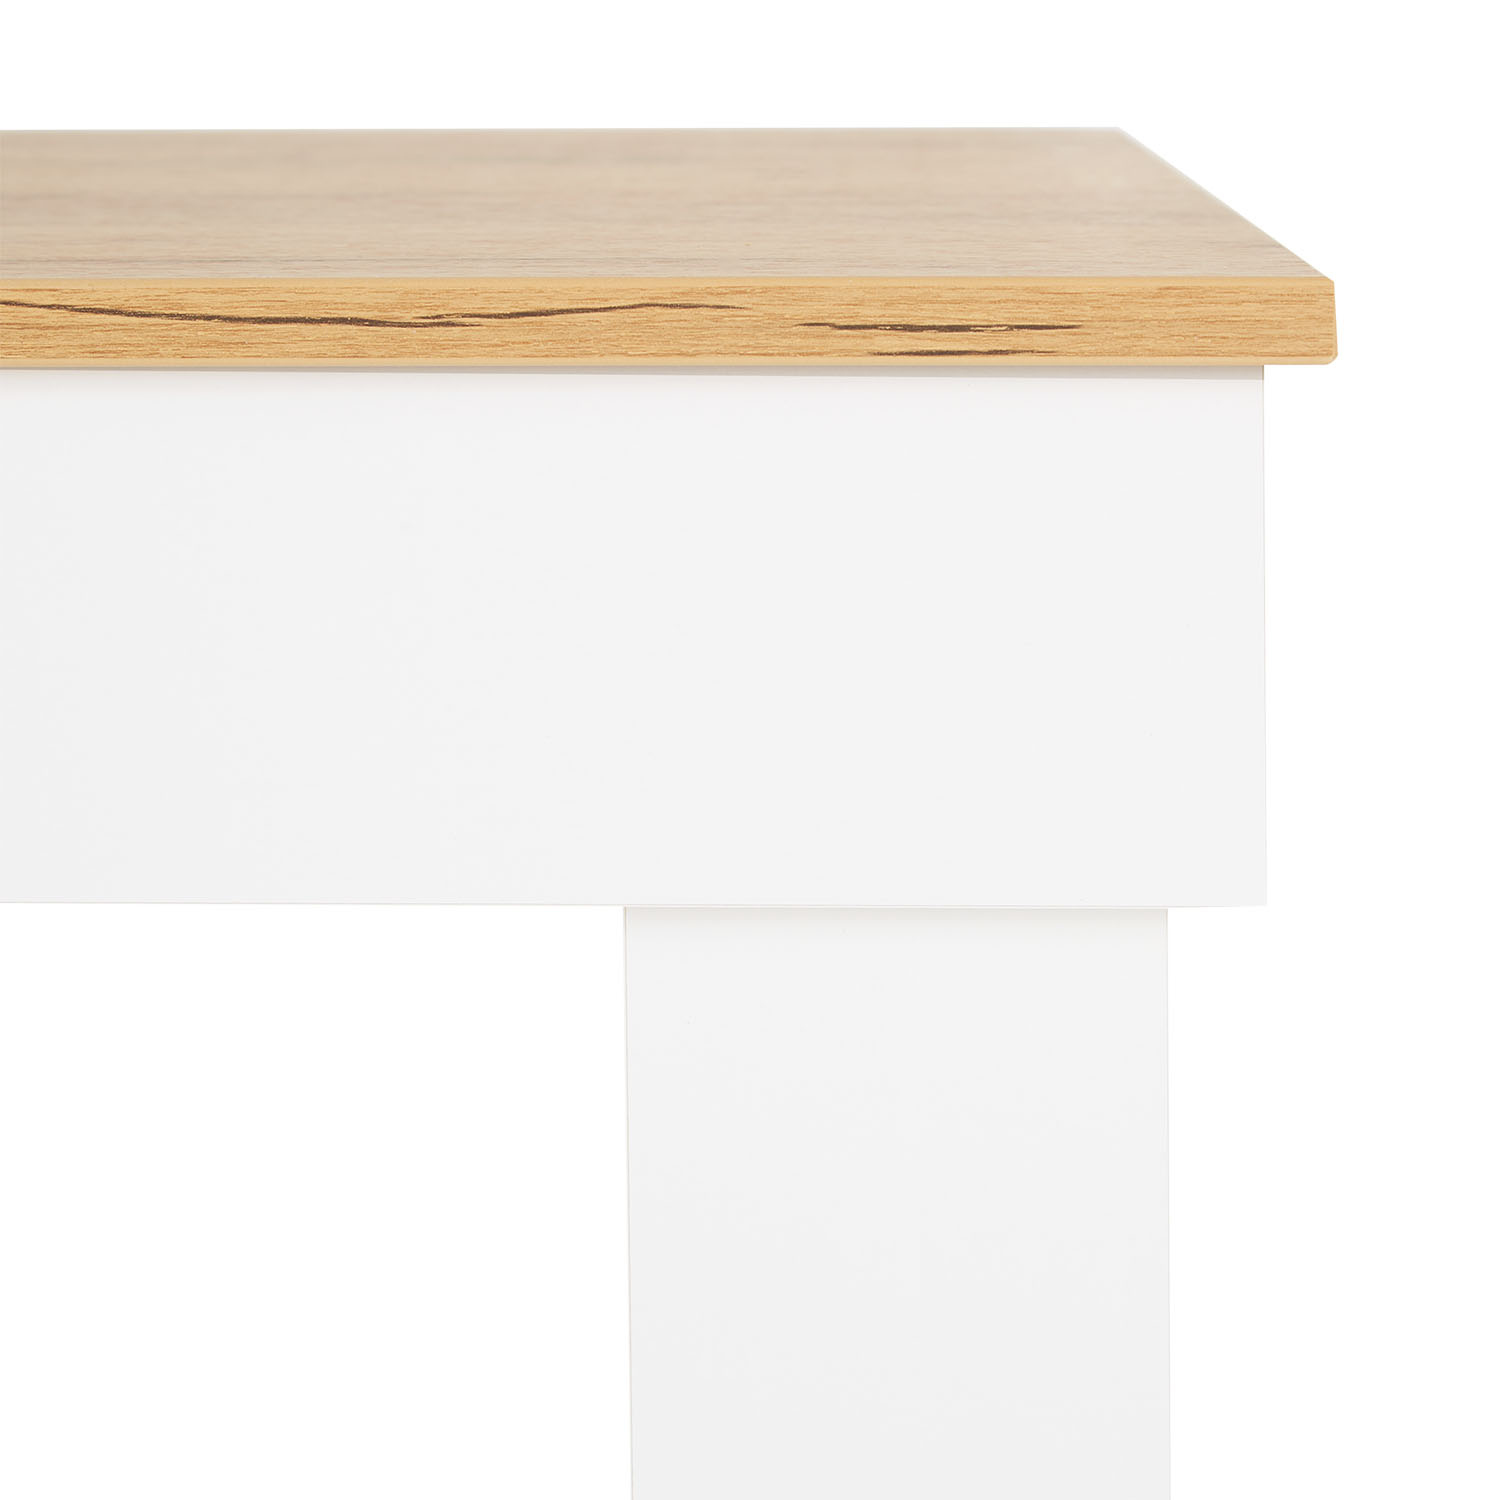 Esstisch Esszimmertisch Weiß 90x60 cm Holztisch Küchentisch Holz Eiche Tisch Massiv Wohnzimmertisch